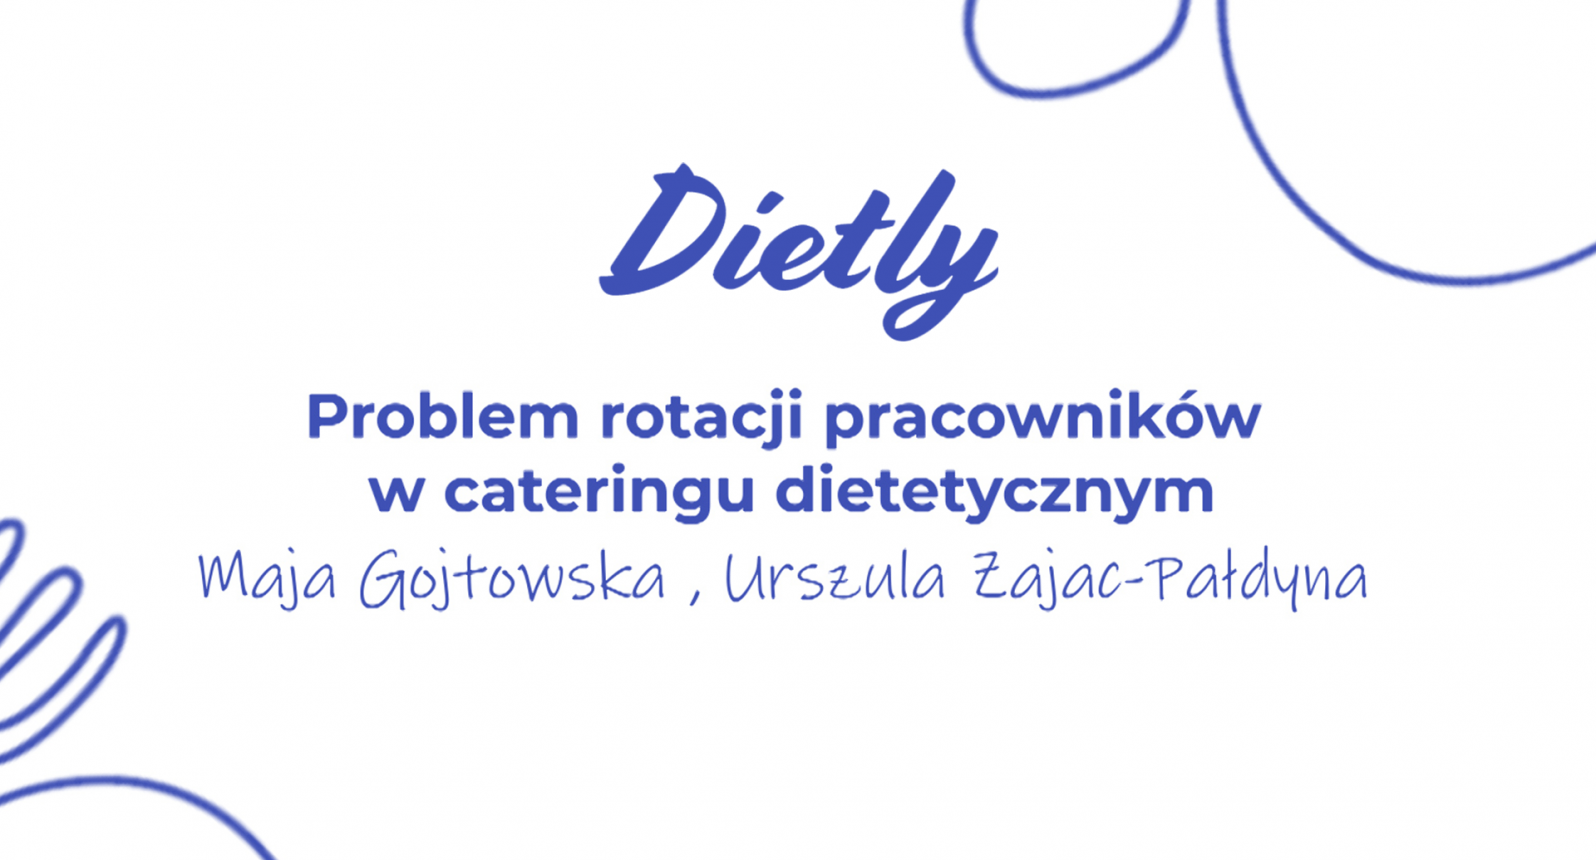 Problem rotacji pracowników w cateringu dietetycznym - jak zatrzymać pracowników produkcyjnych, dietetyków oraz szefów kuchni?